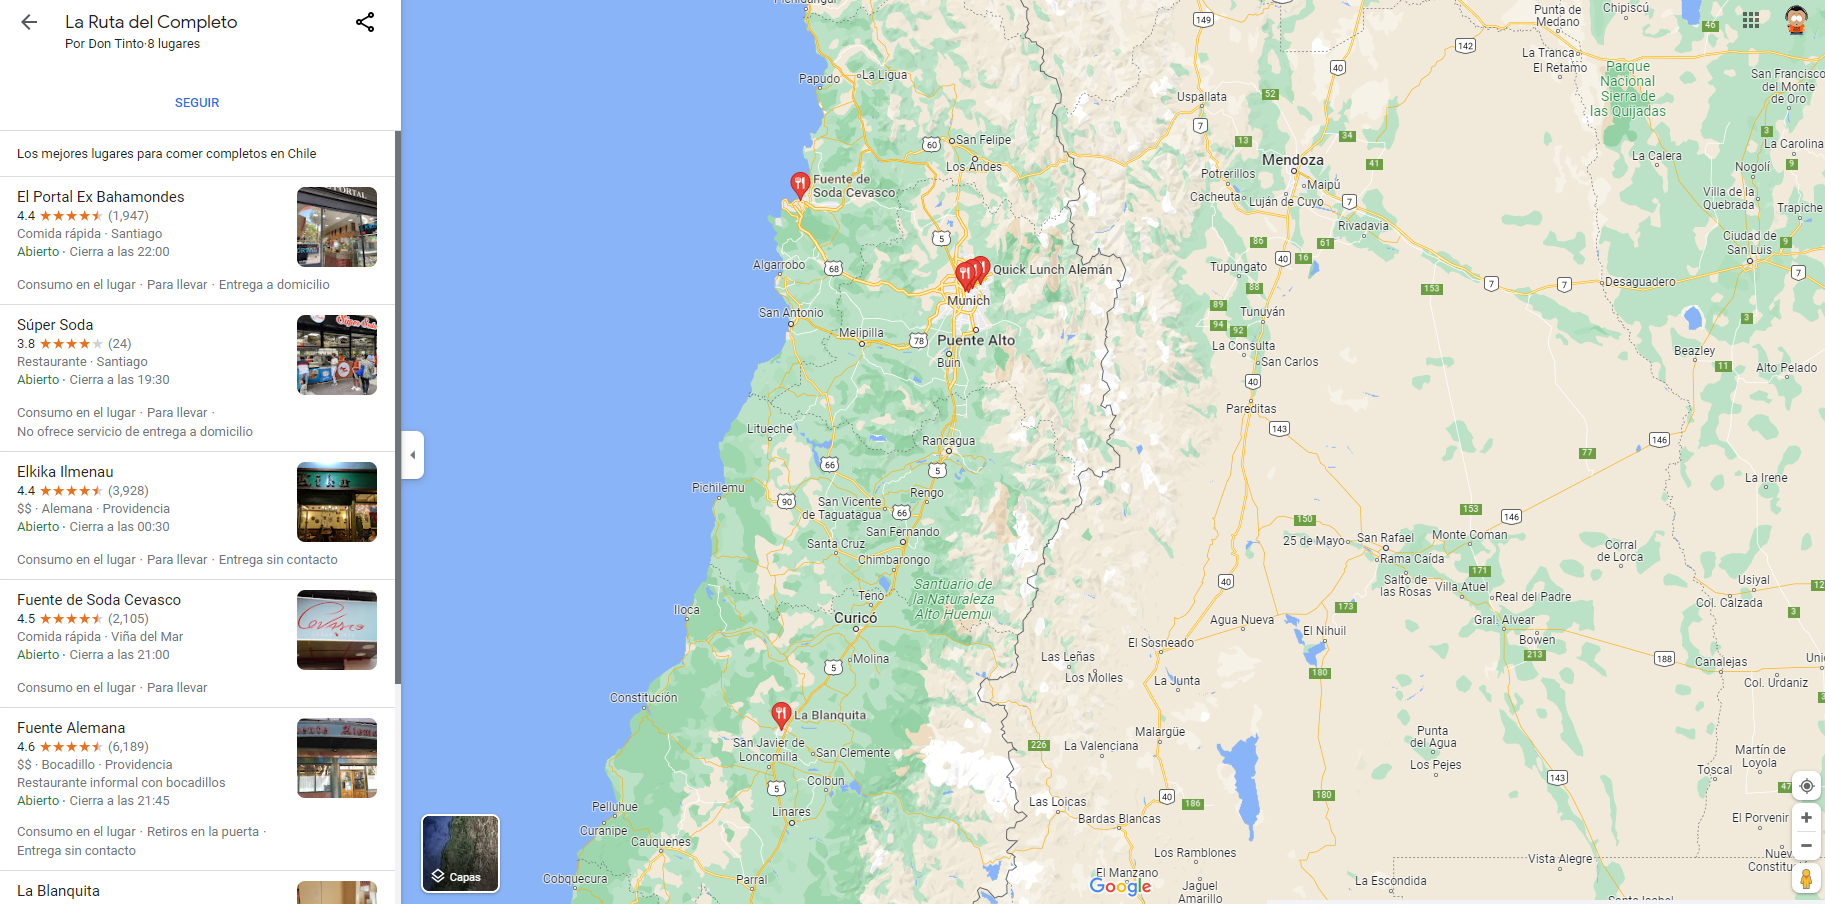 Captura de la ruta del completo de Google Maps.